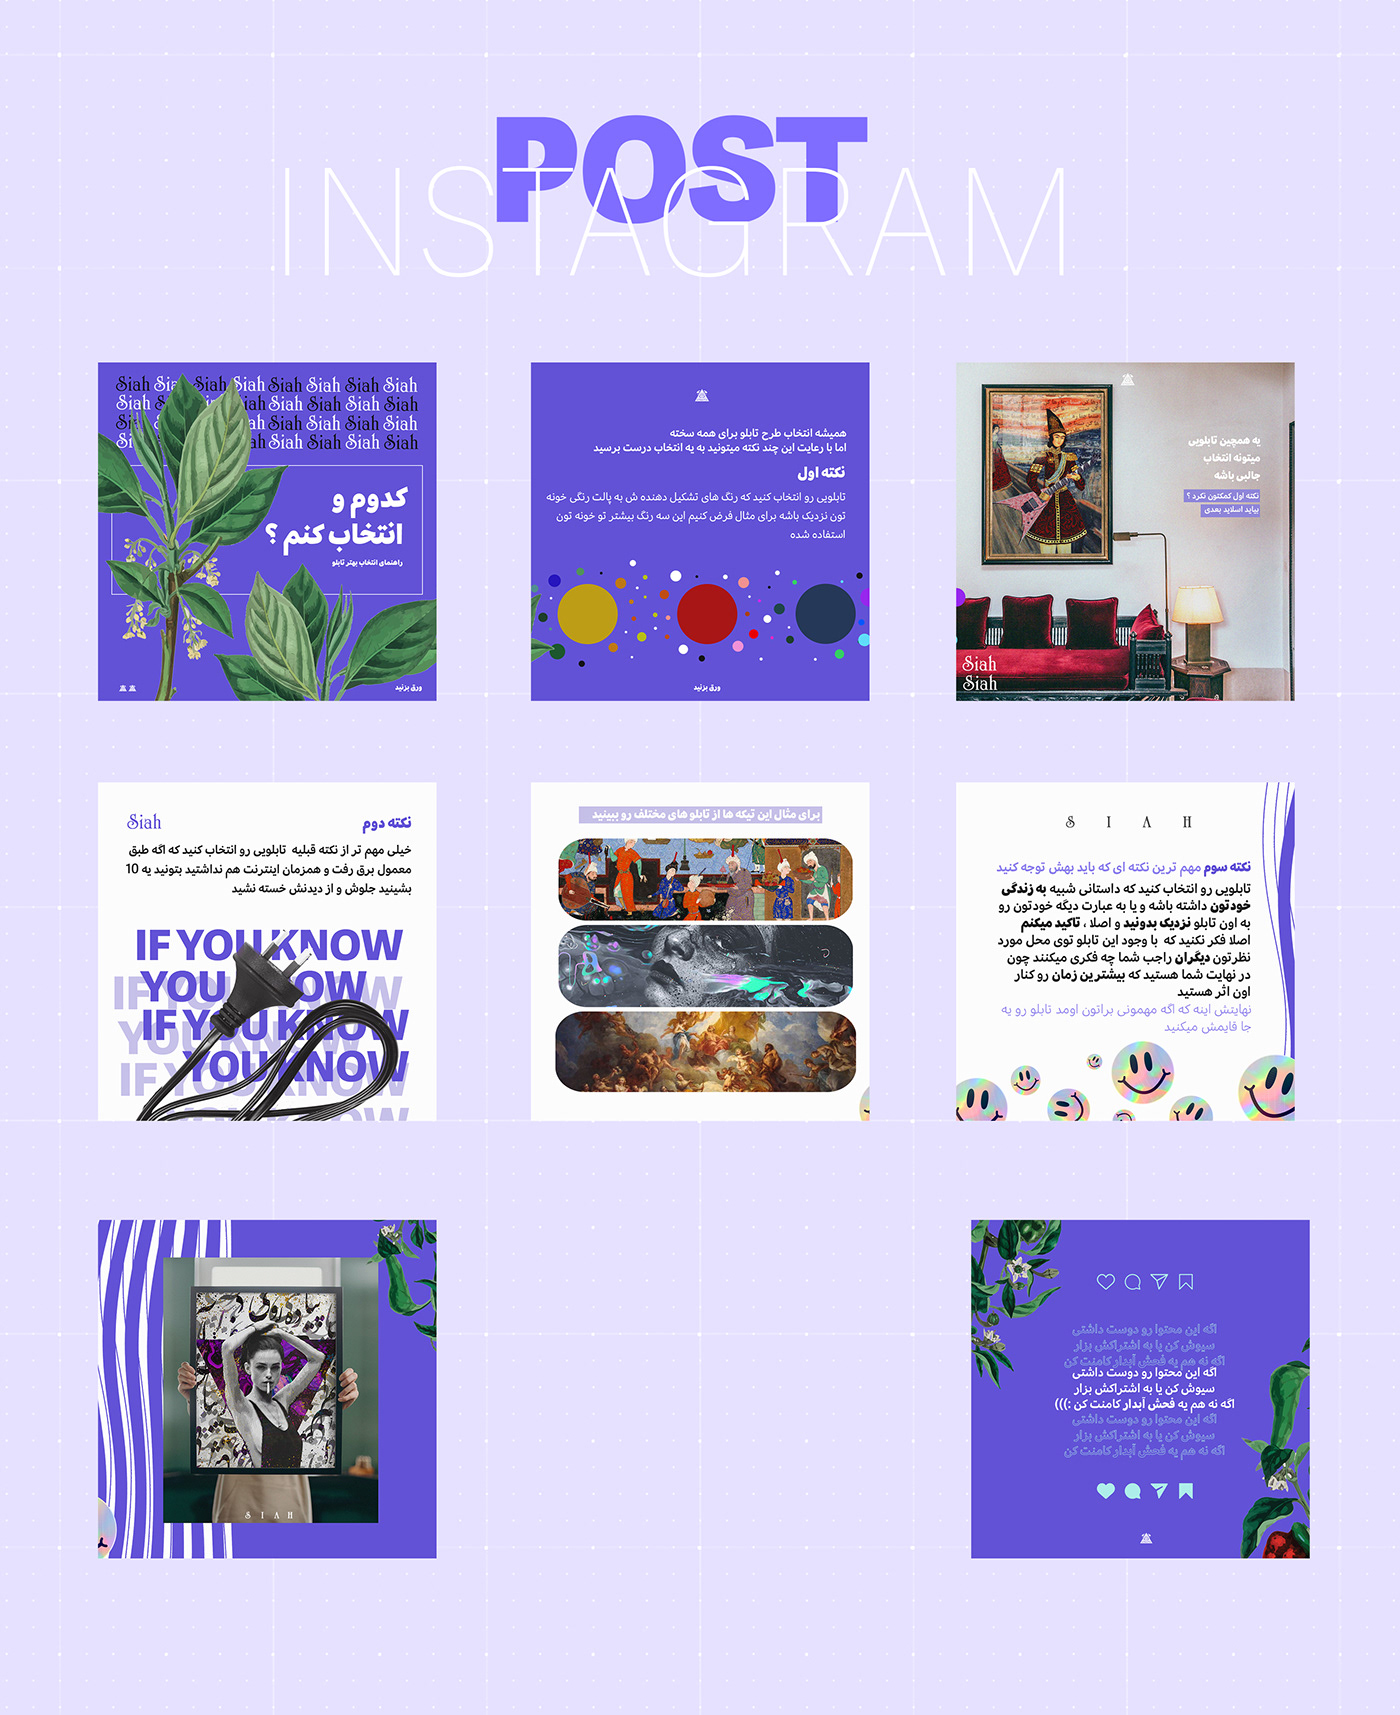 art canvas instadesign instagram Instagram Post Instagram template print sell social media Social Media Design